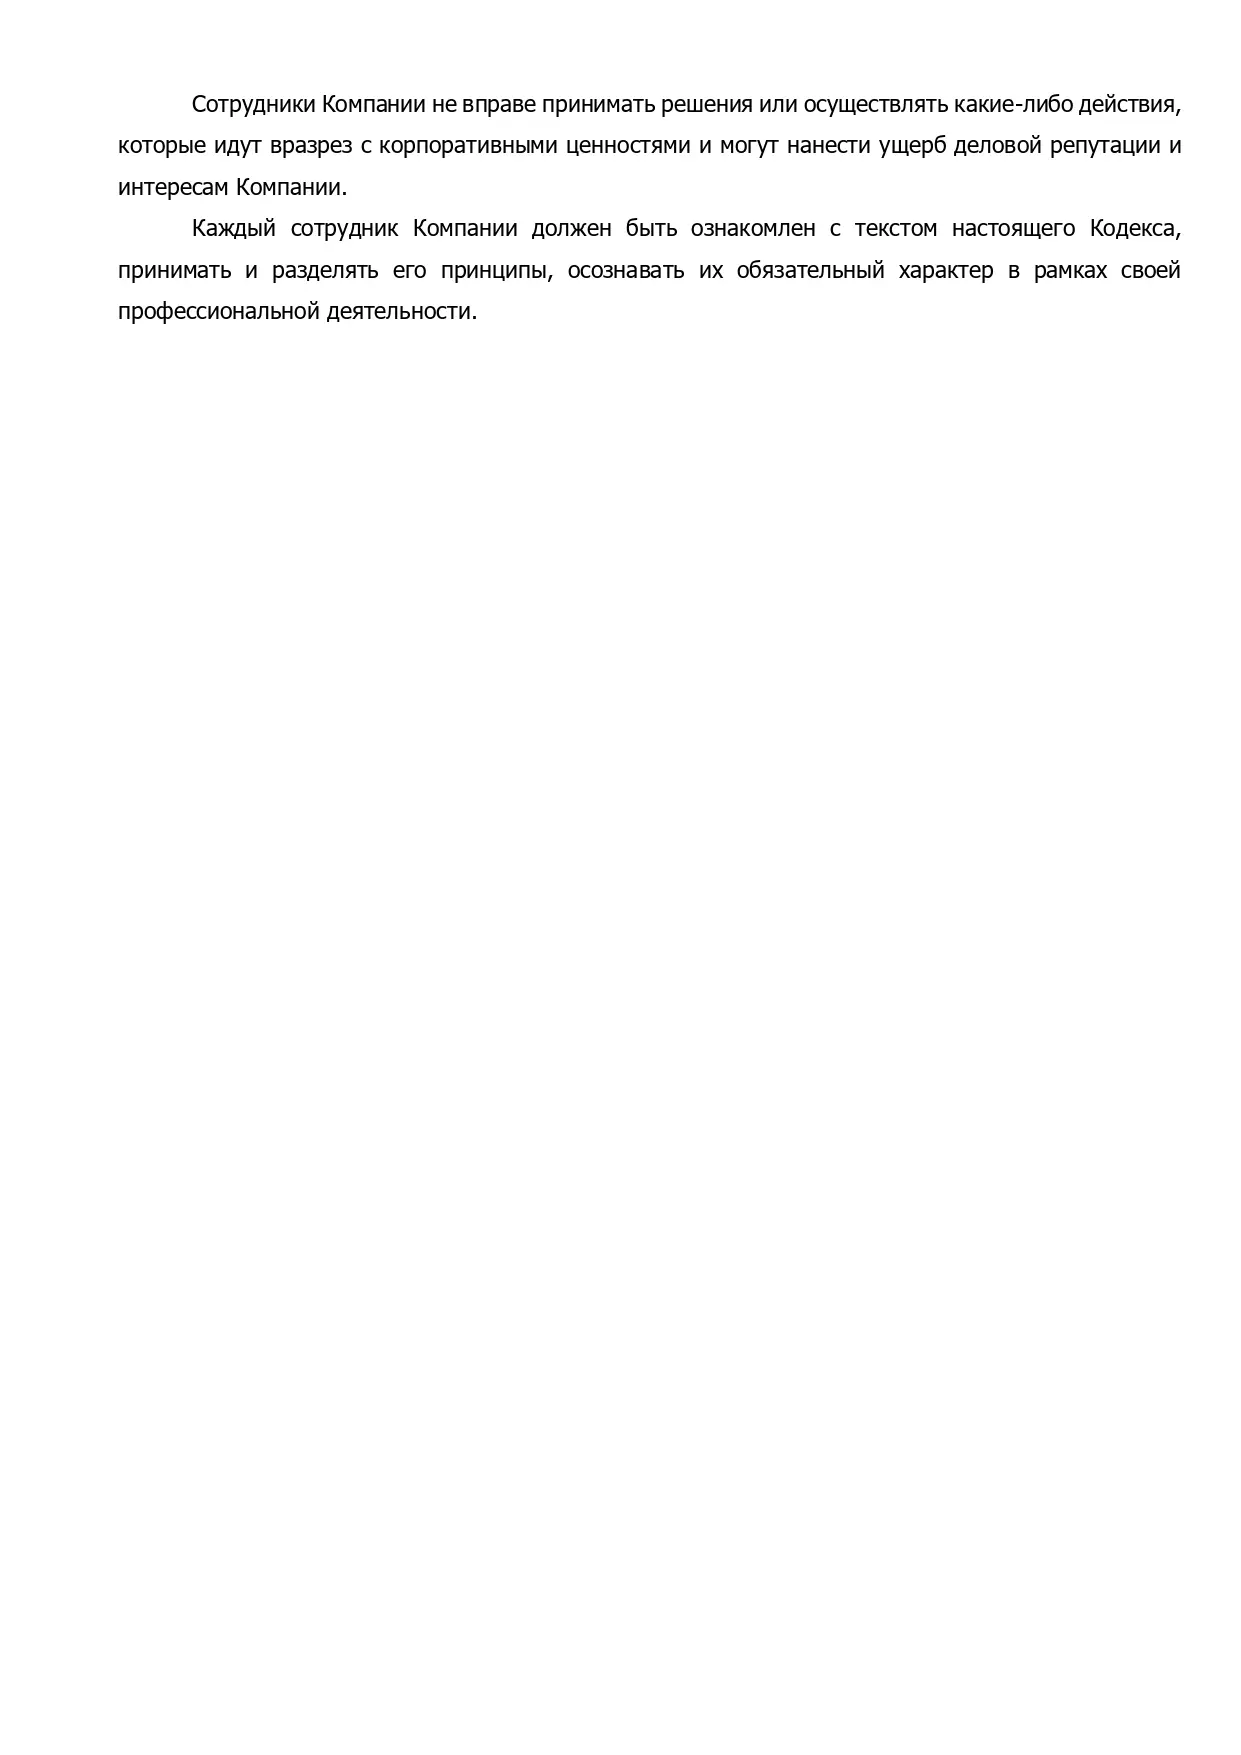 AnyConv.com__korporativnij_kodeks_kompanii_11_01_2024_page-0004